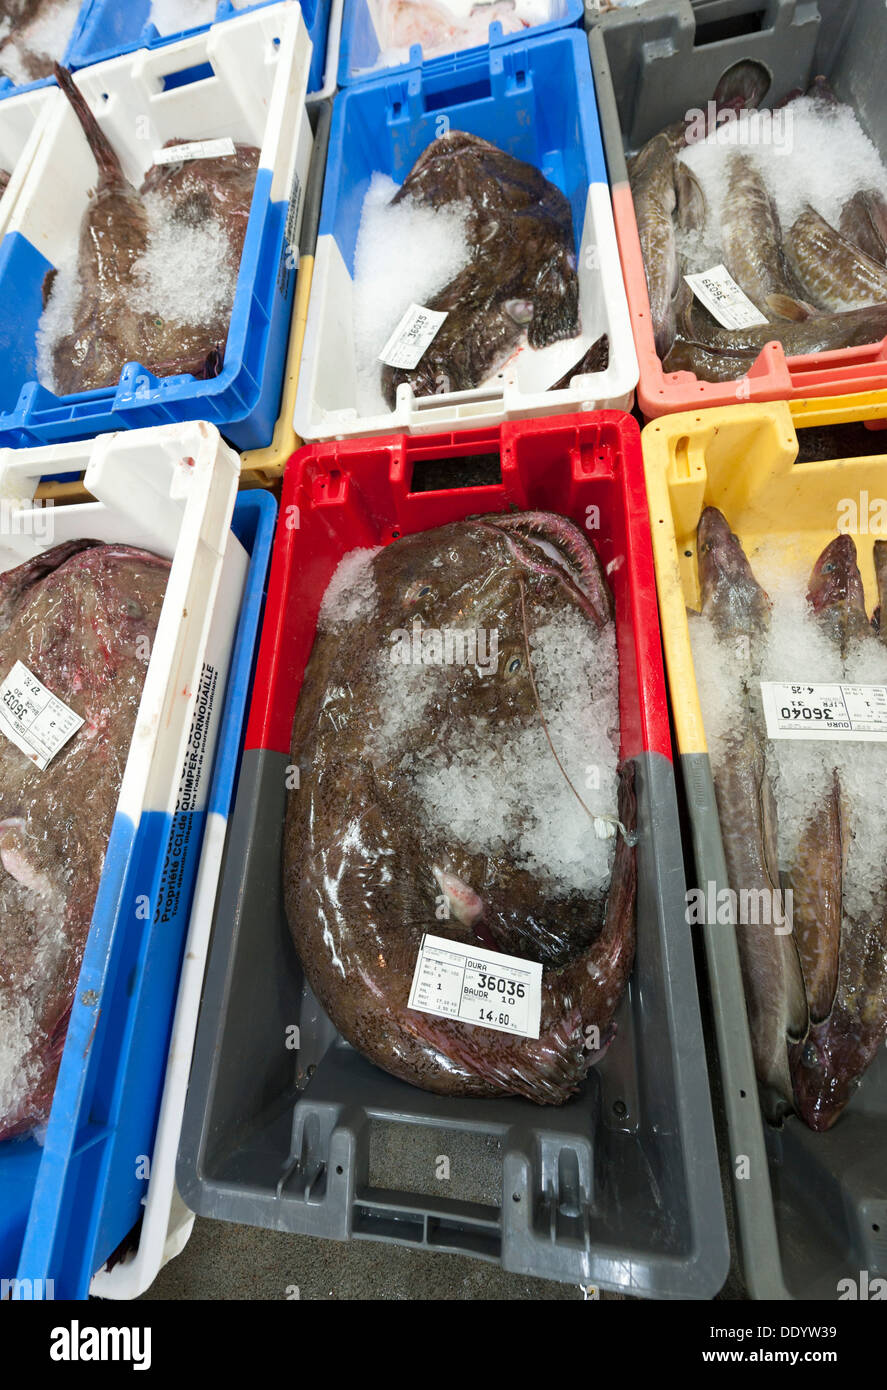 Le marché aux poissons et la vente aux enchères ou crieur public de Concarneau Bretagne France montrant les cases de lotte Banque D'Images